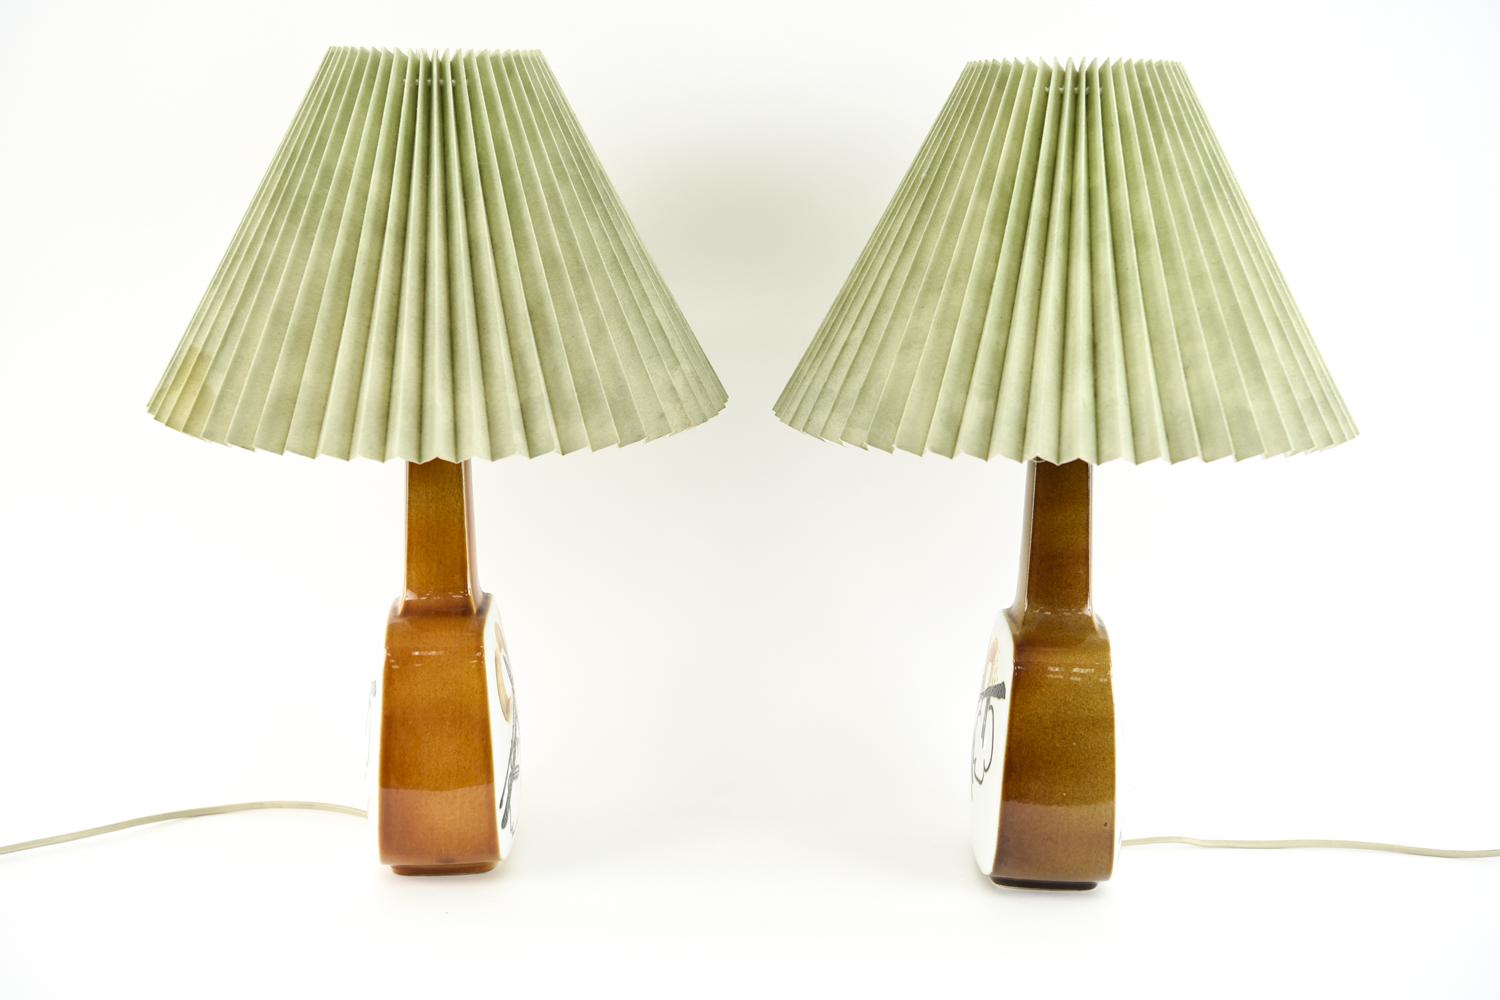 '2' Royal Copenhagen Aluminia Table Lamps 1